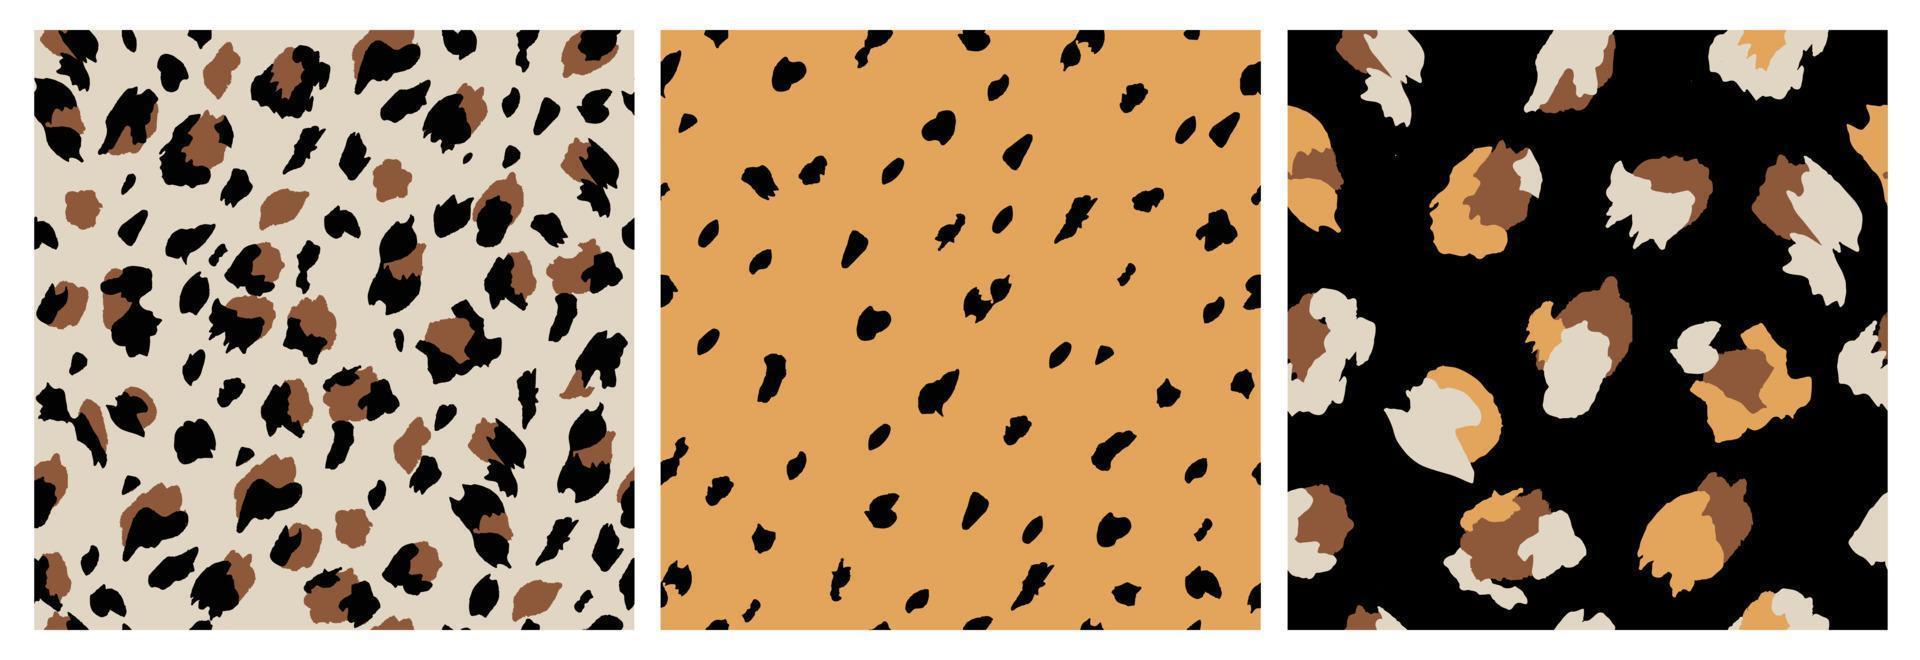 uppsättning av abstrakt leopard hud sömlös mönster. djur- skriva ut. geometrisk folklore prydnad för social media baner, omslag, tapet. vektor illustration.